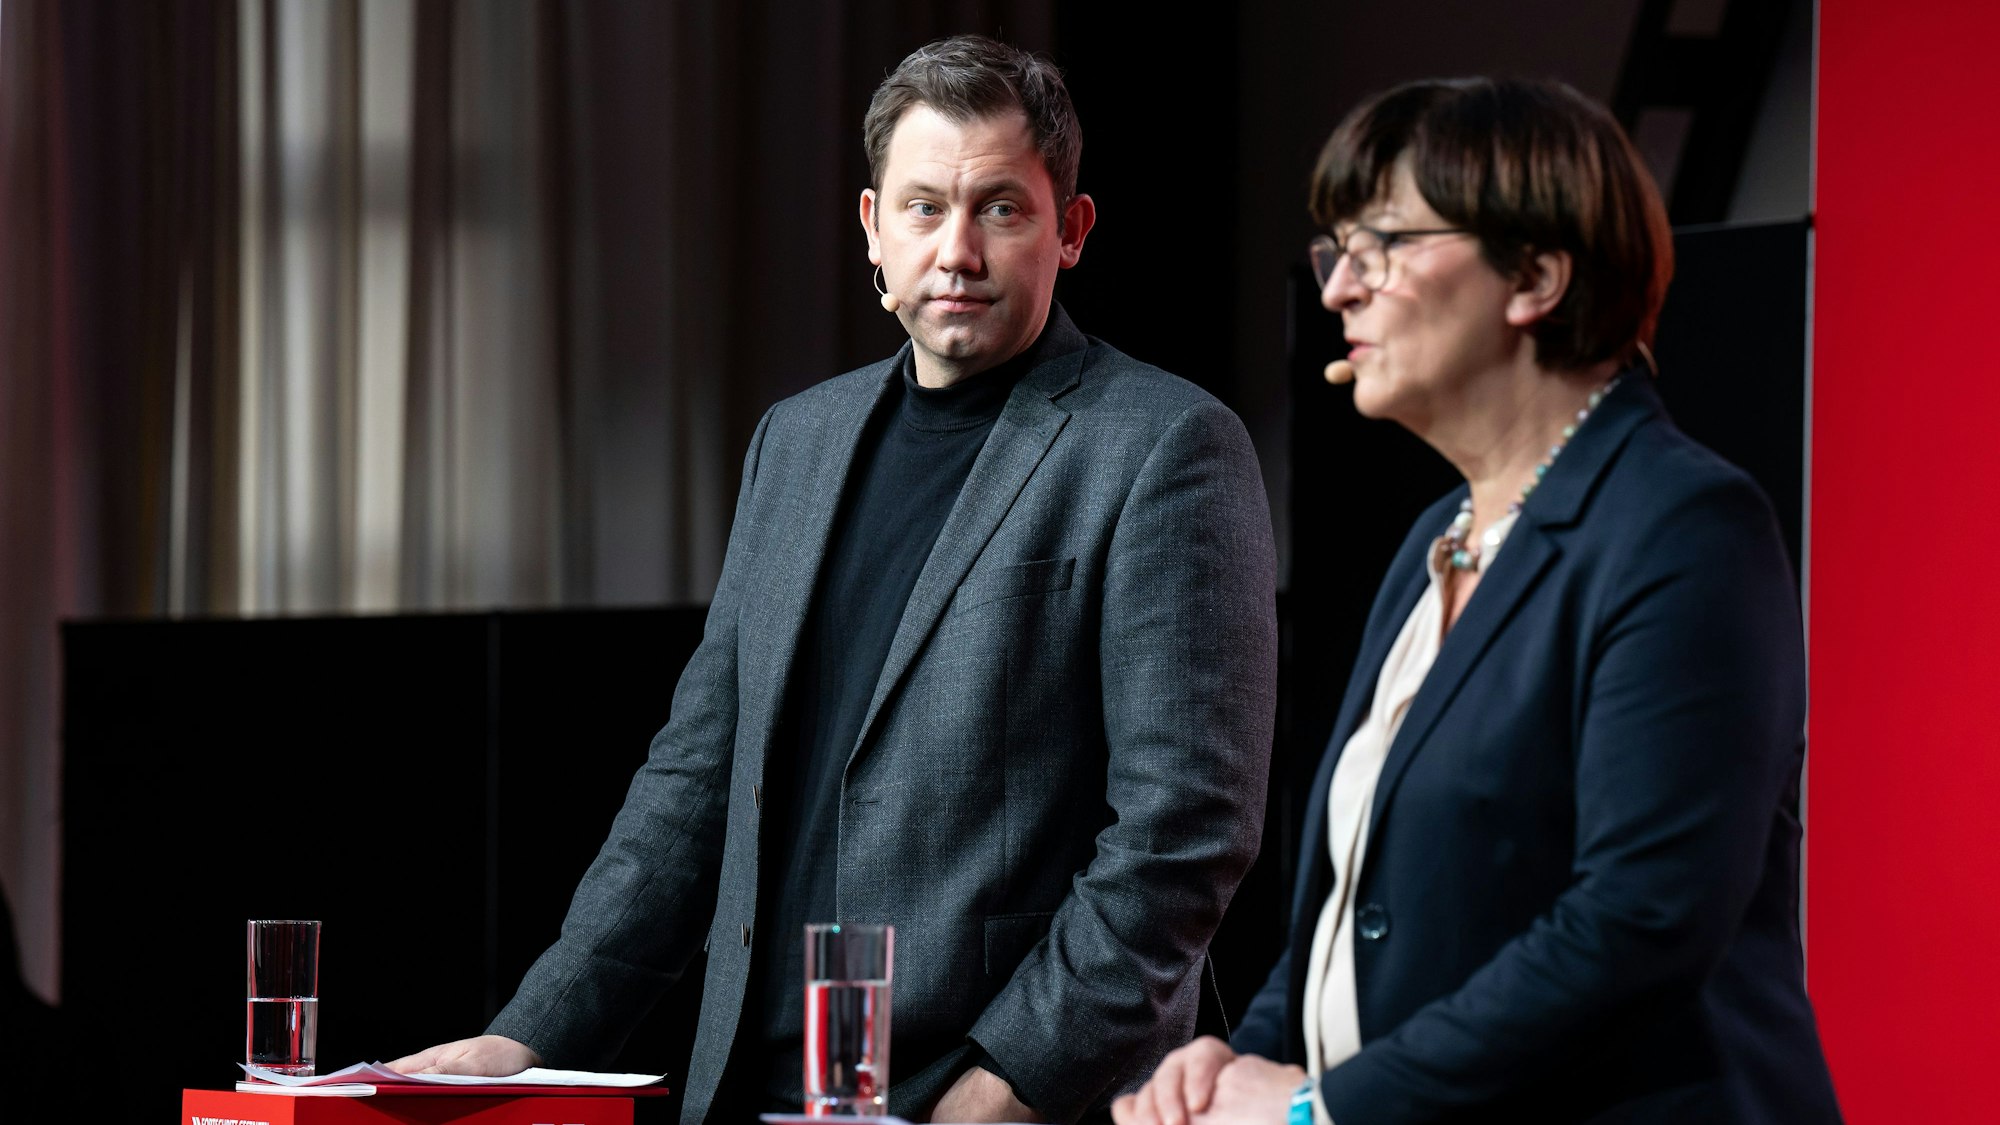 Die SPD-Vorsitzenden Saskia Esken (r) und Lars Klingbeil äußern sich bei einer Pressekonferenz. (Archivbild)